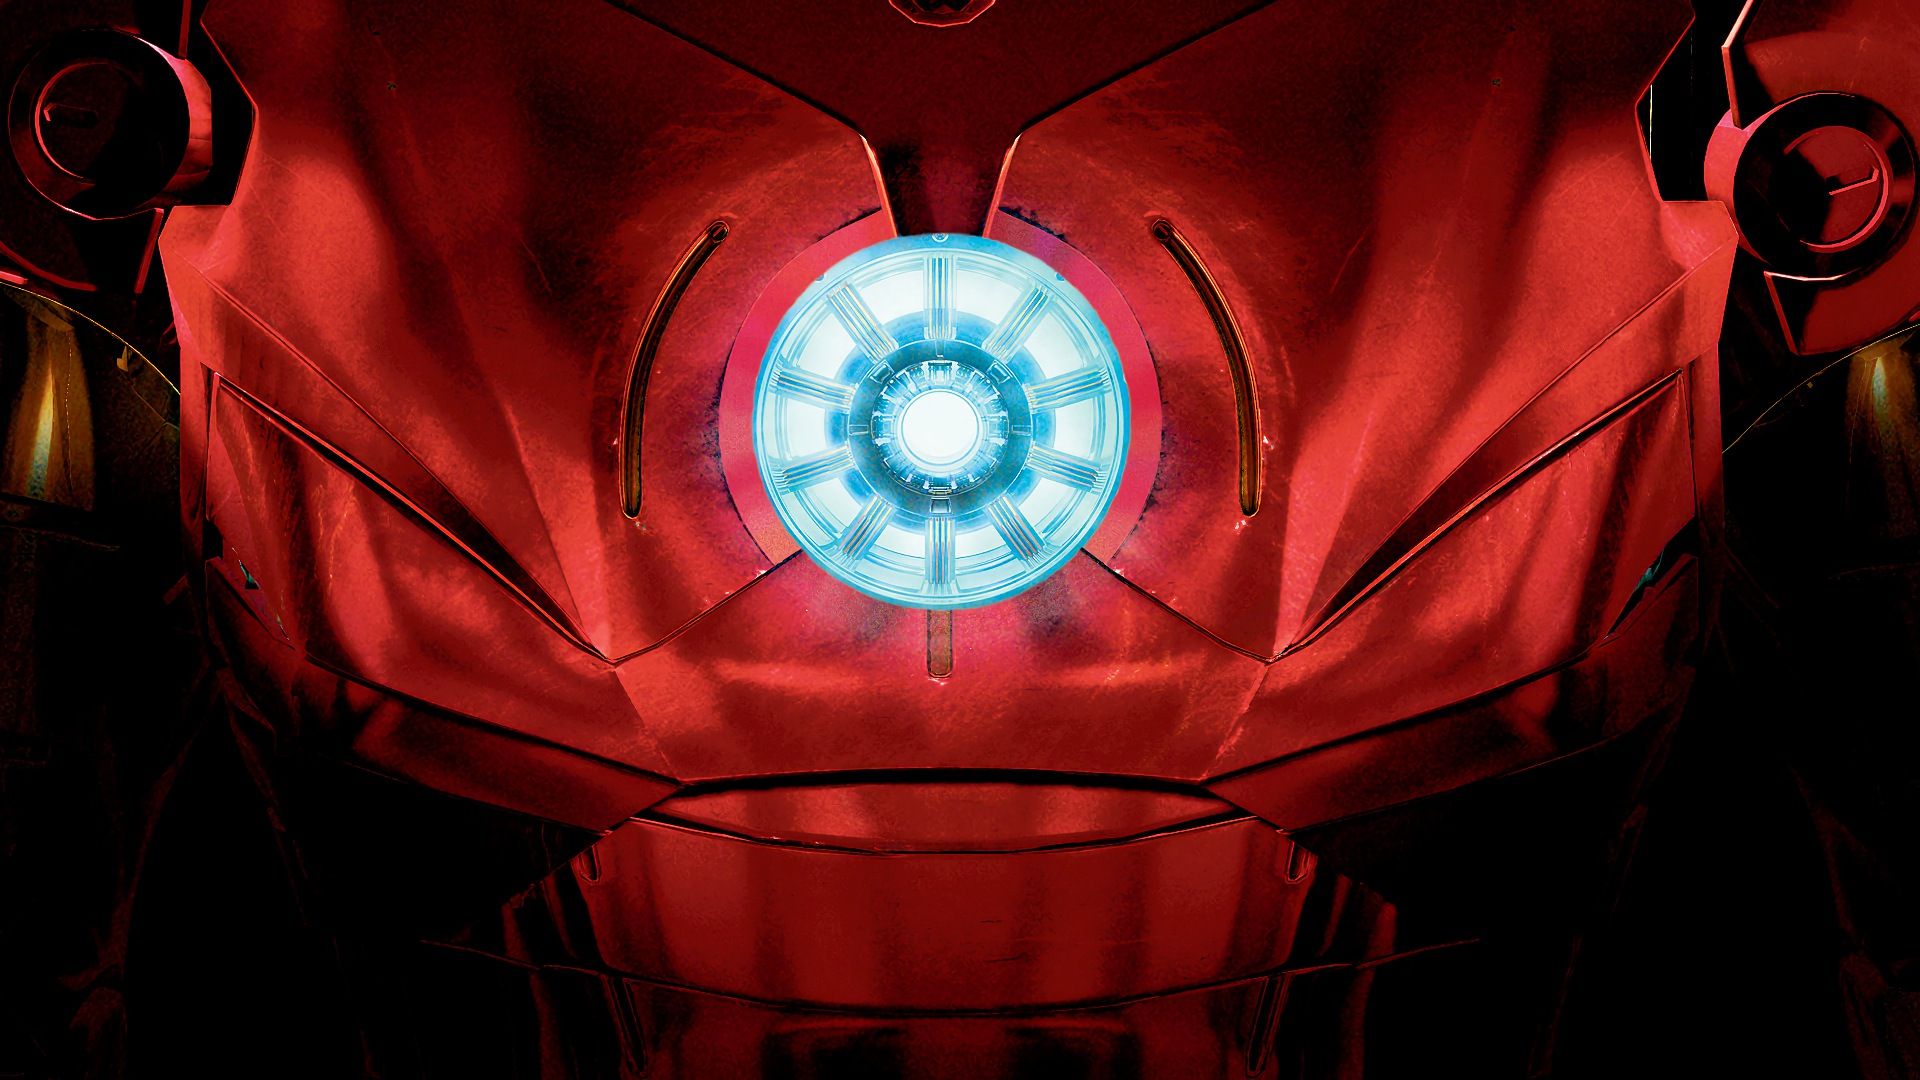 Iron Man Arc Reactor Wallpaper posted .cutewallpaper.org